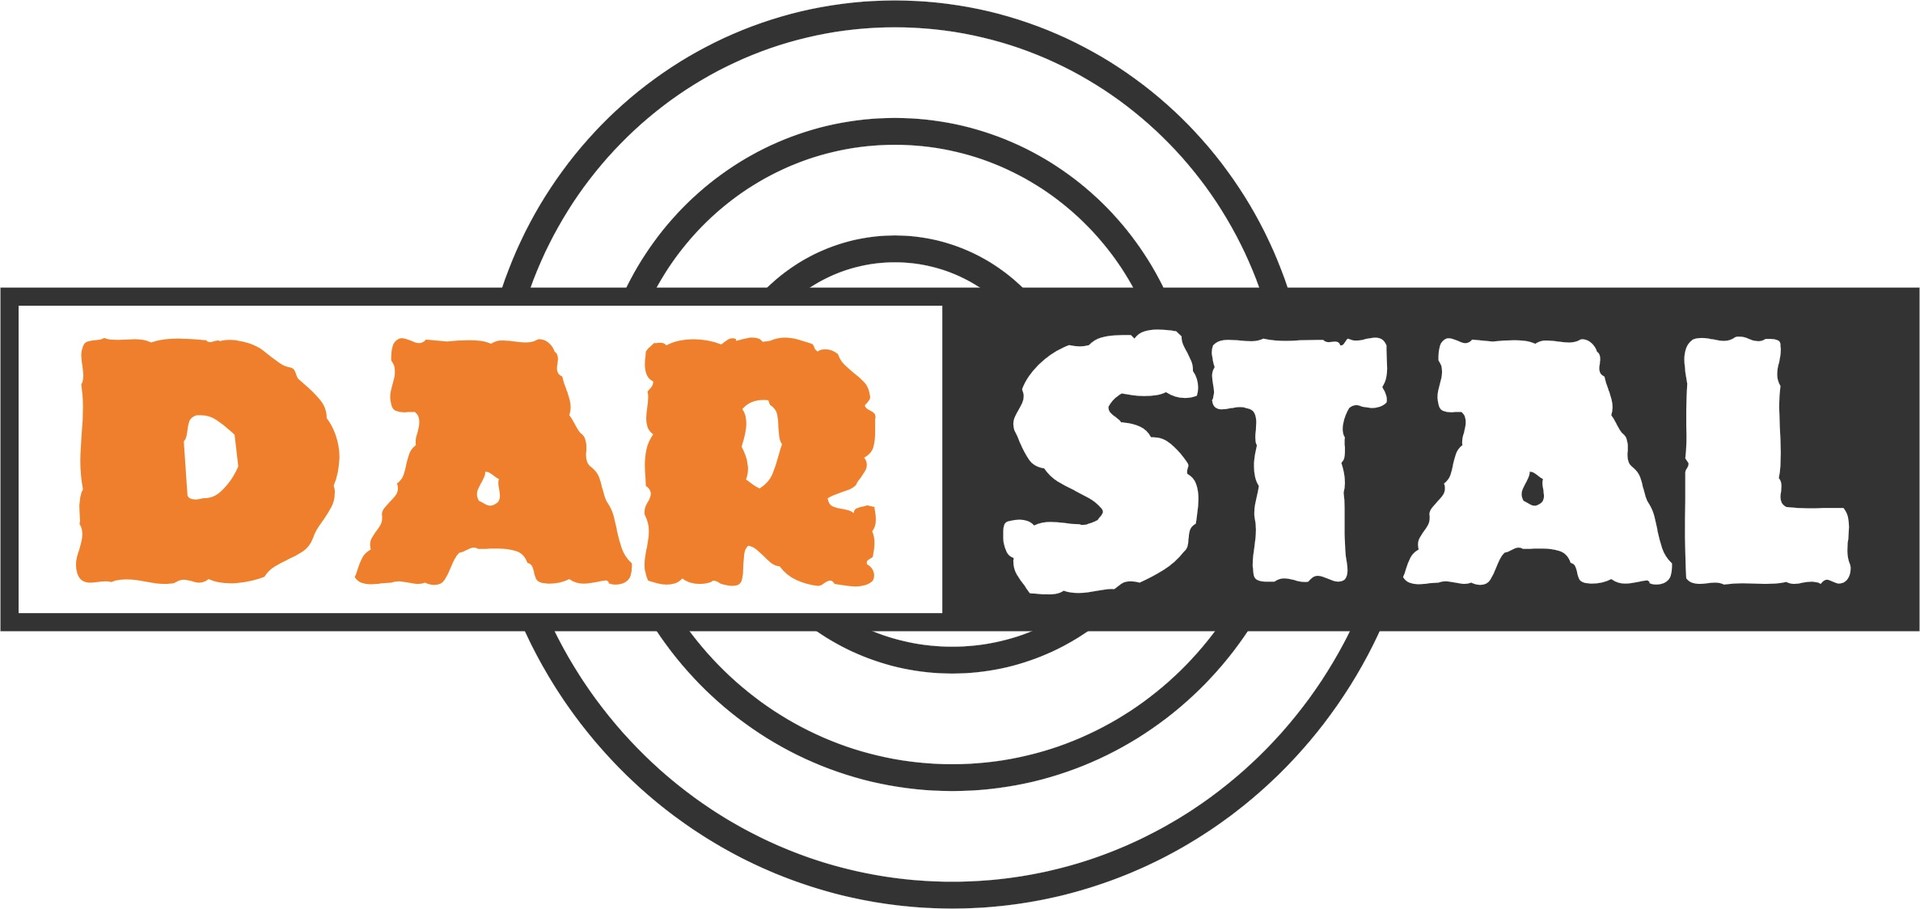 Zdjęcie przedstawia logo firmy Darstal